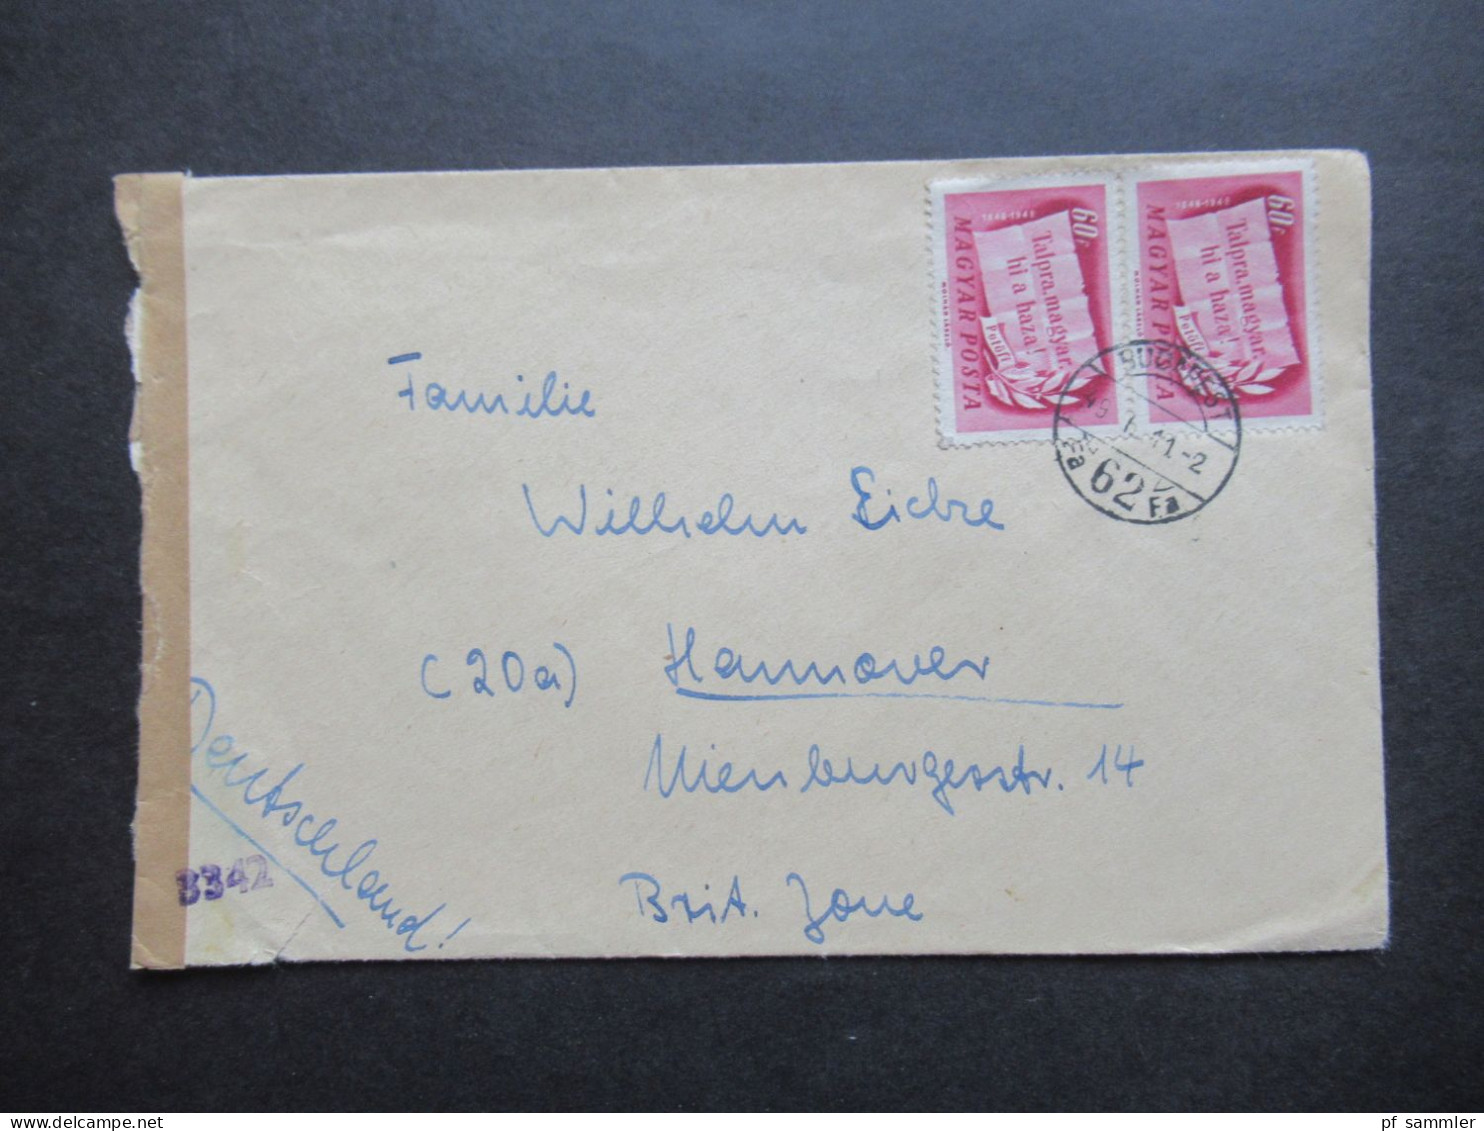 Ungarn 1949 Auslandsbrief / Zensurbeleg Budapest - Hannover Mit Verschlussstreifen Und Zensurstempel 3342 - Covers & Documents